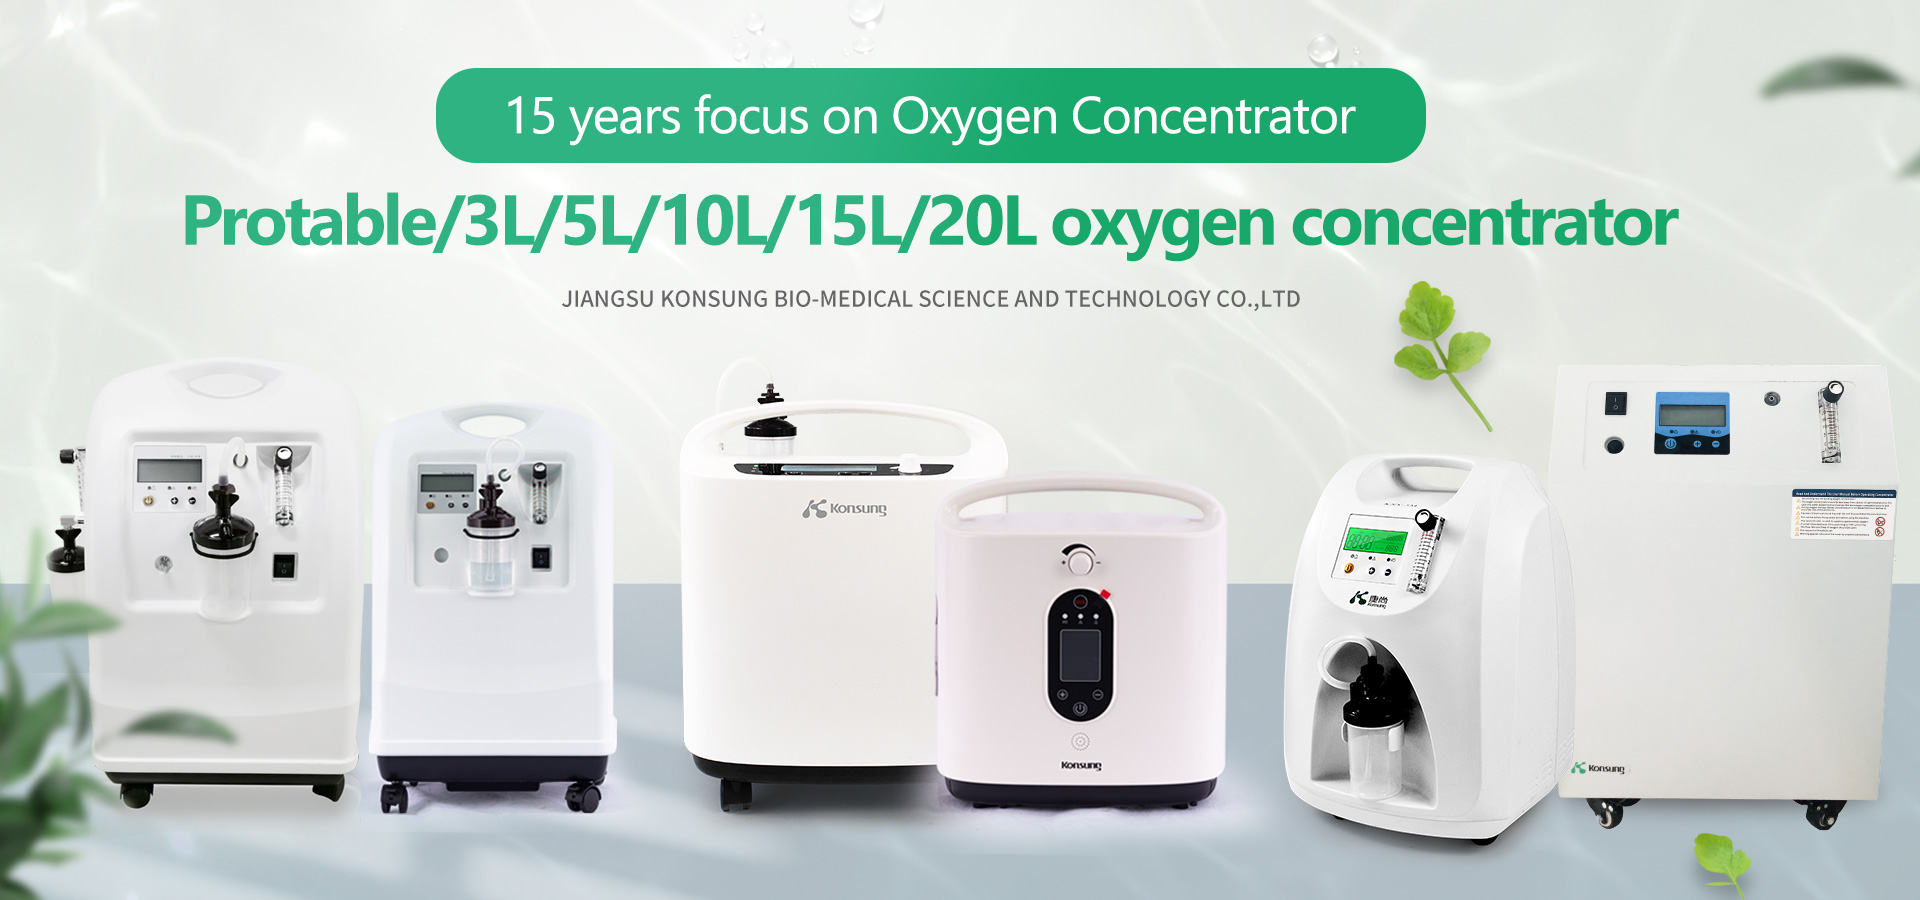 Konsung medical oxygen concentrators